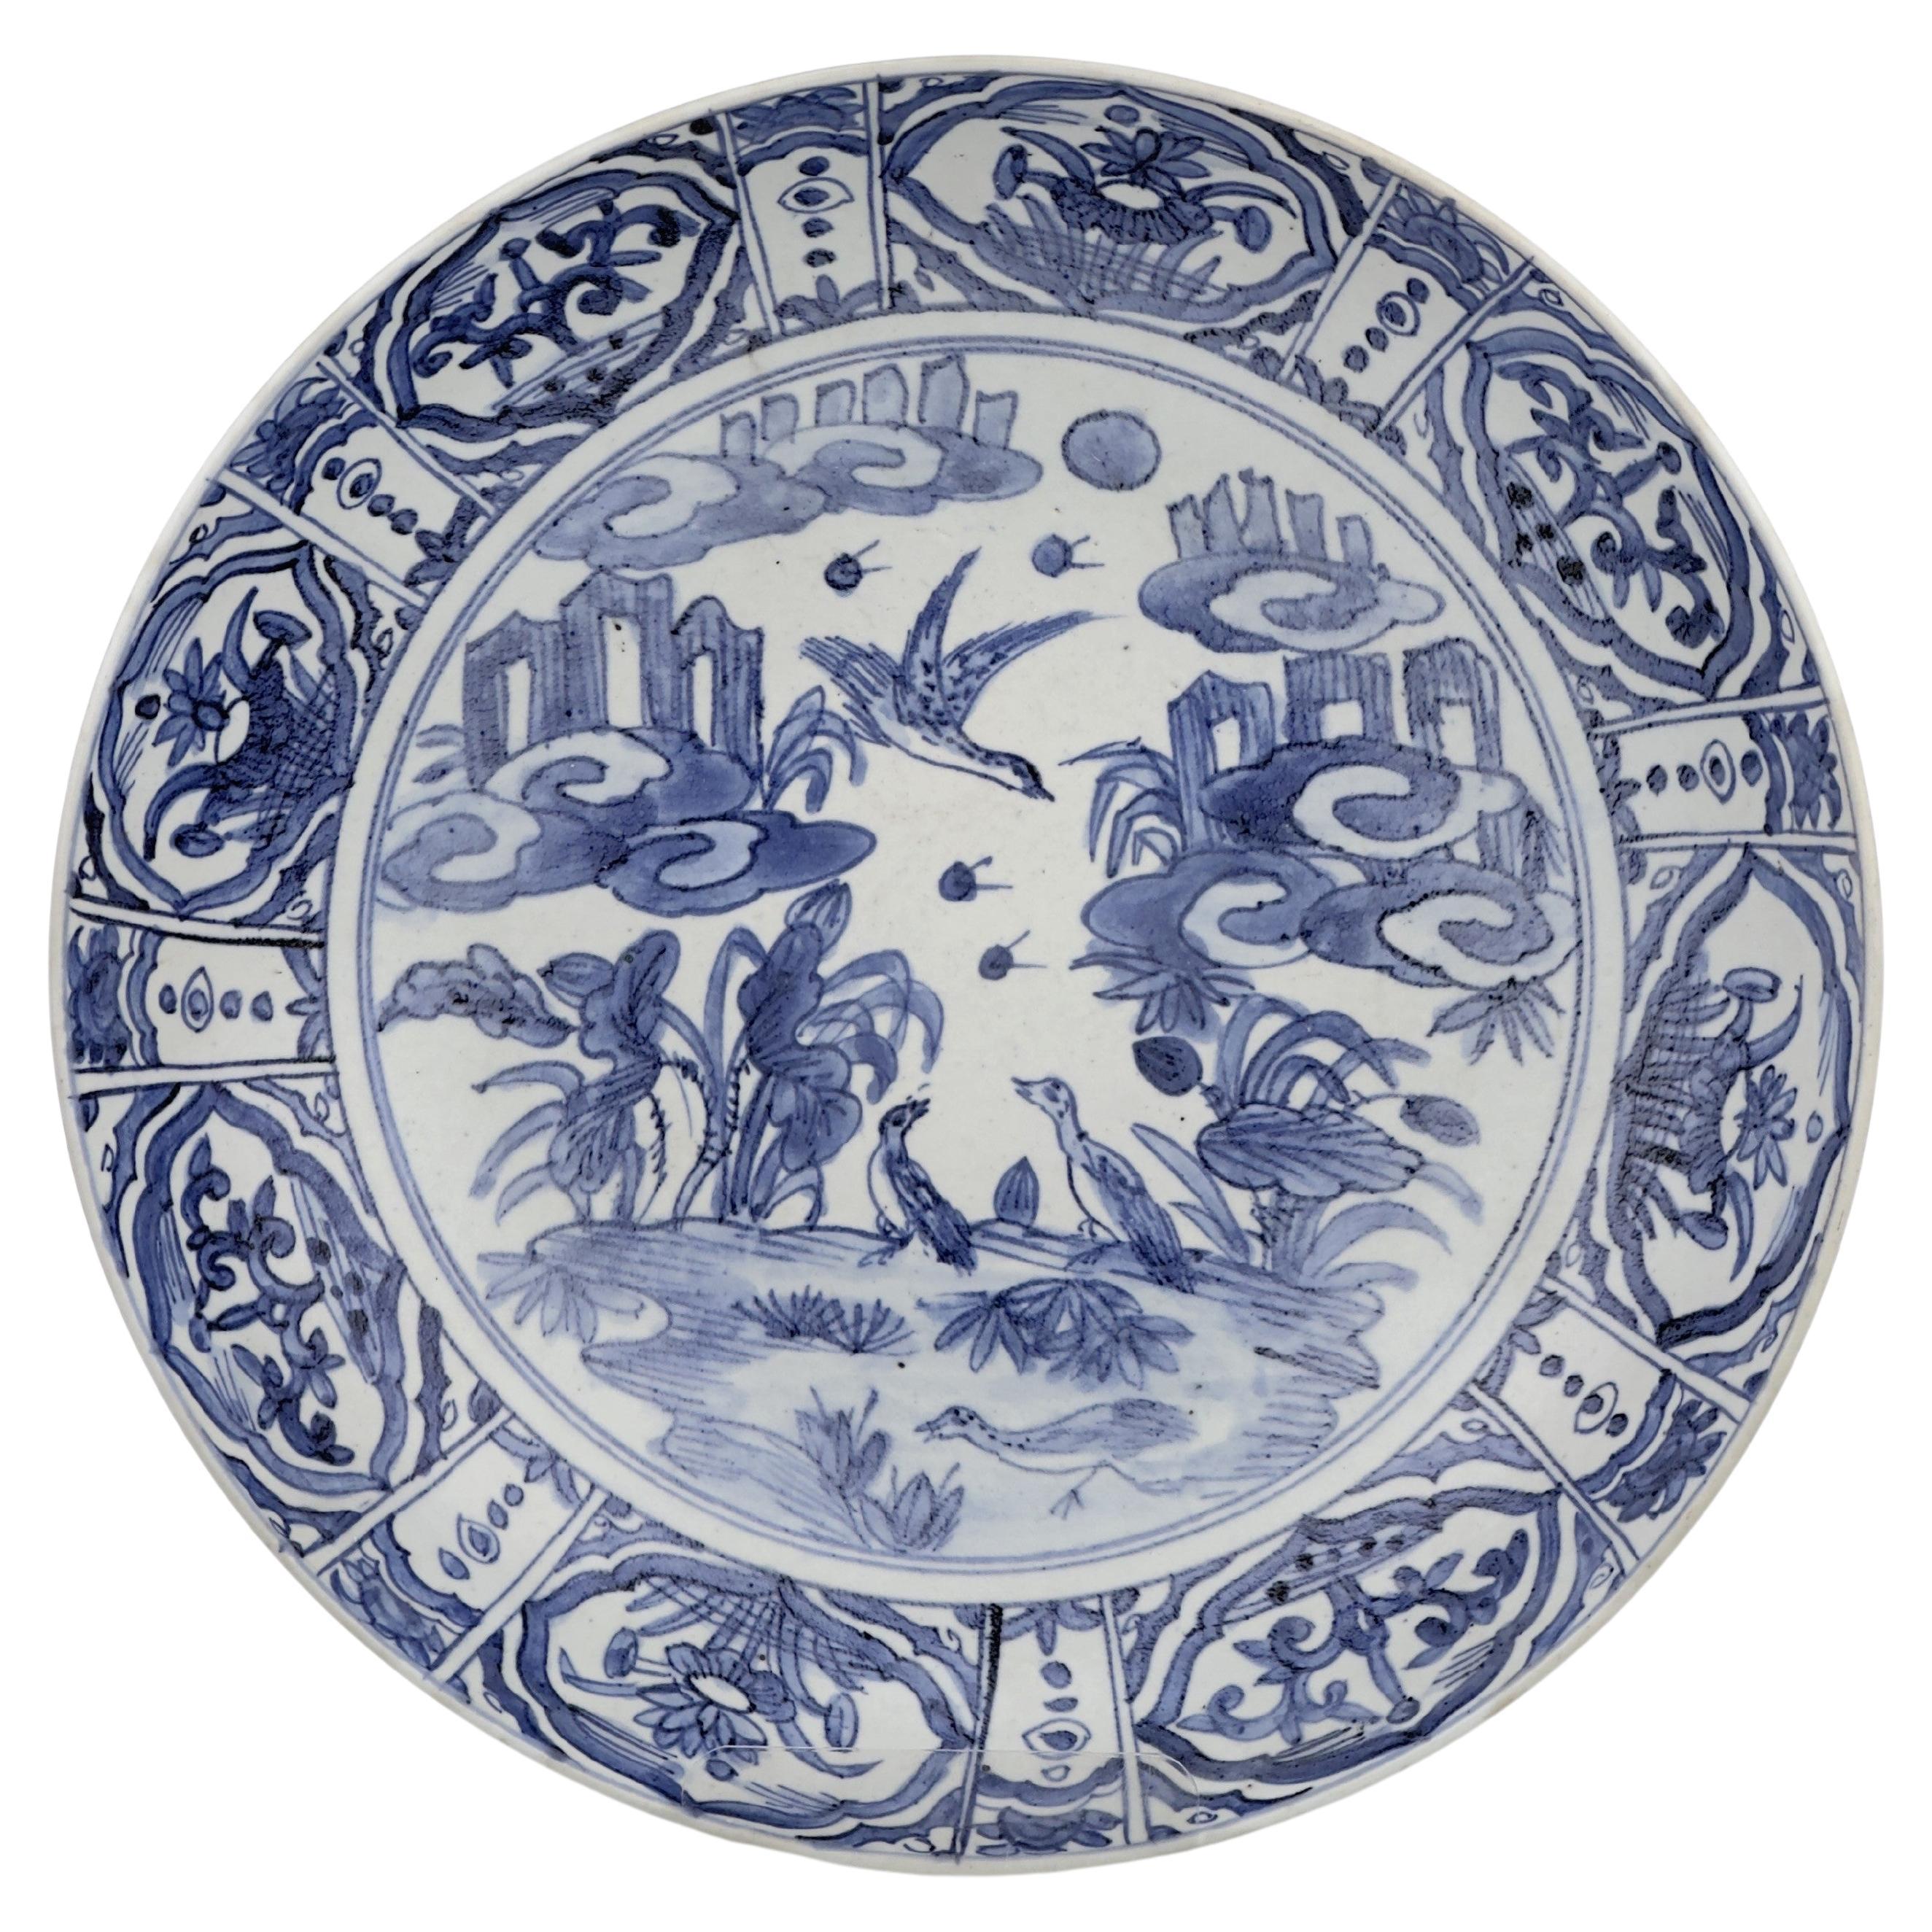 Großer blau-weißer Swatow-Plattenteller, späte Ming-Ära(17. Jahrhundert)